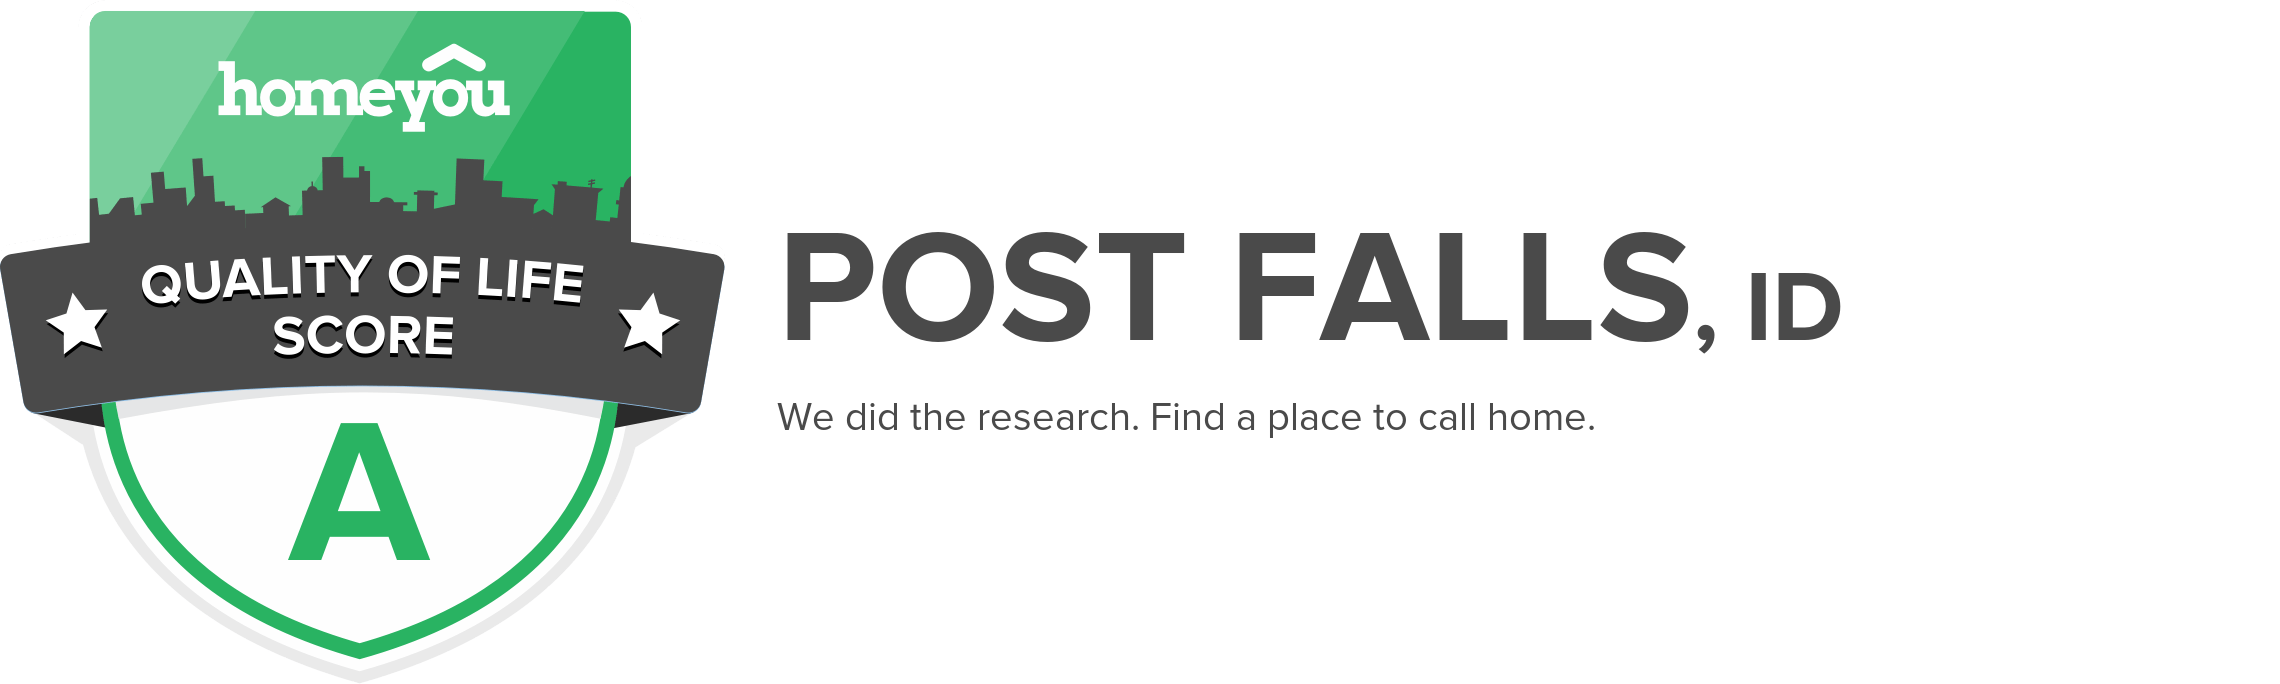 Post Falls, ID